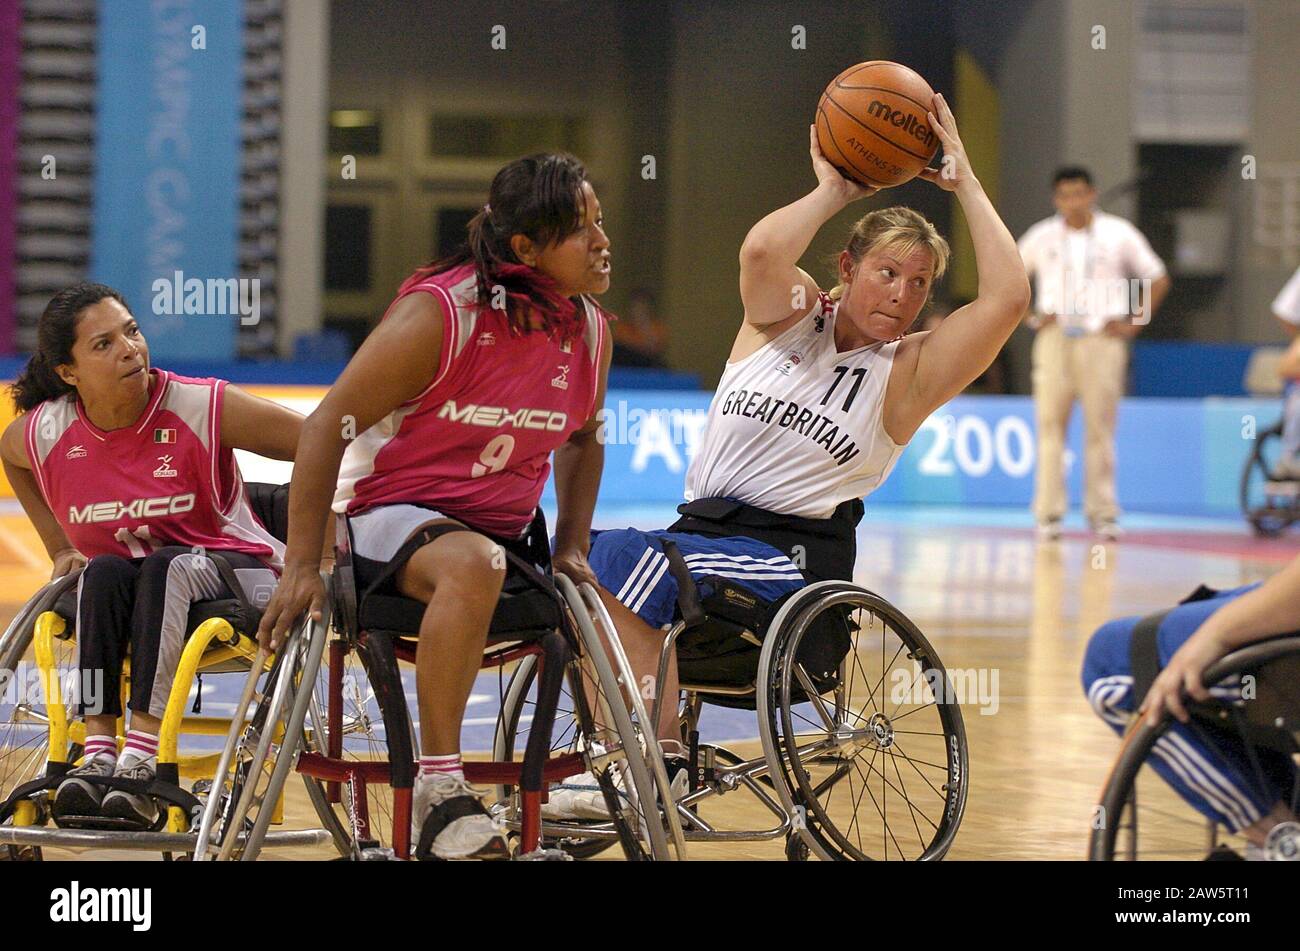 La squadra di basket femminile su sedia a rotelle del Messico (in rosso) compete contro la Gran Bretagna nei Giochi Paralimpici 2004 ad Atene, Grecia. Foto Stock